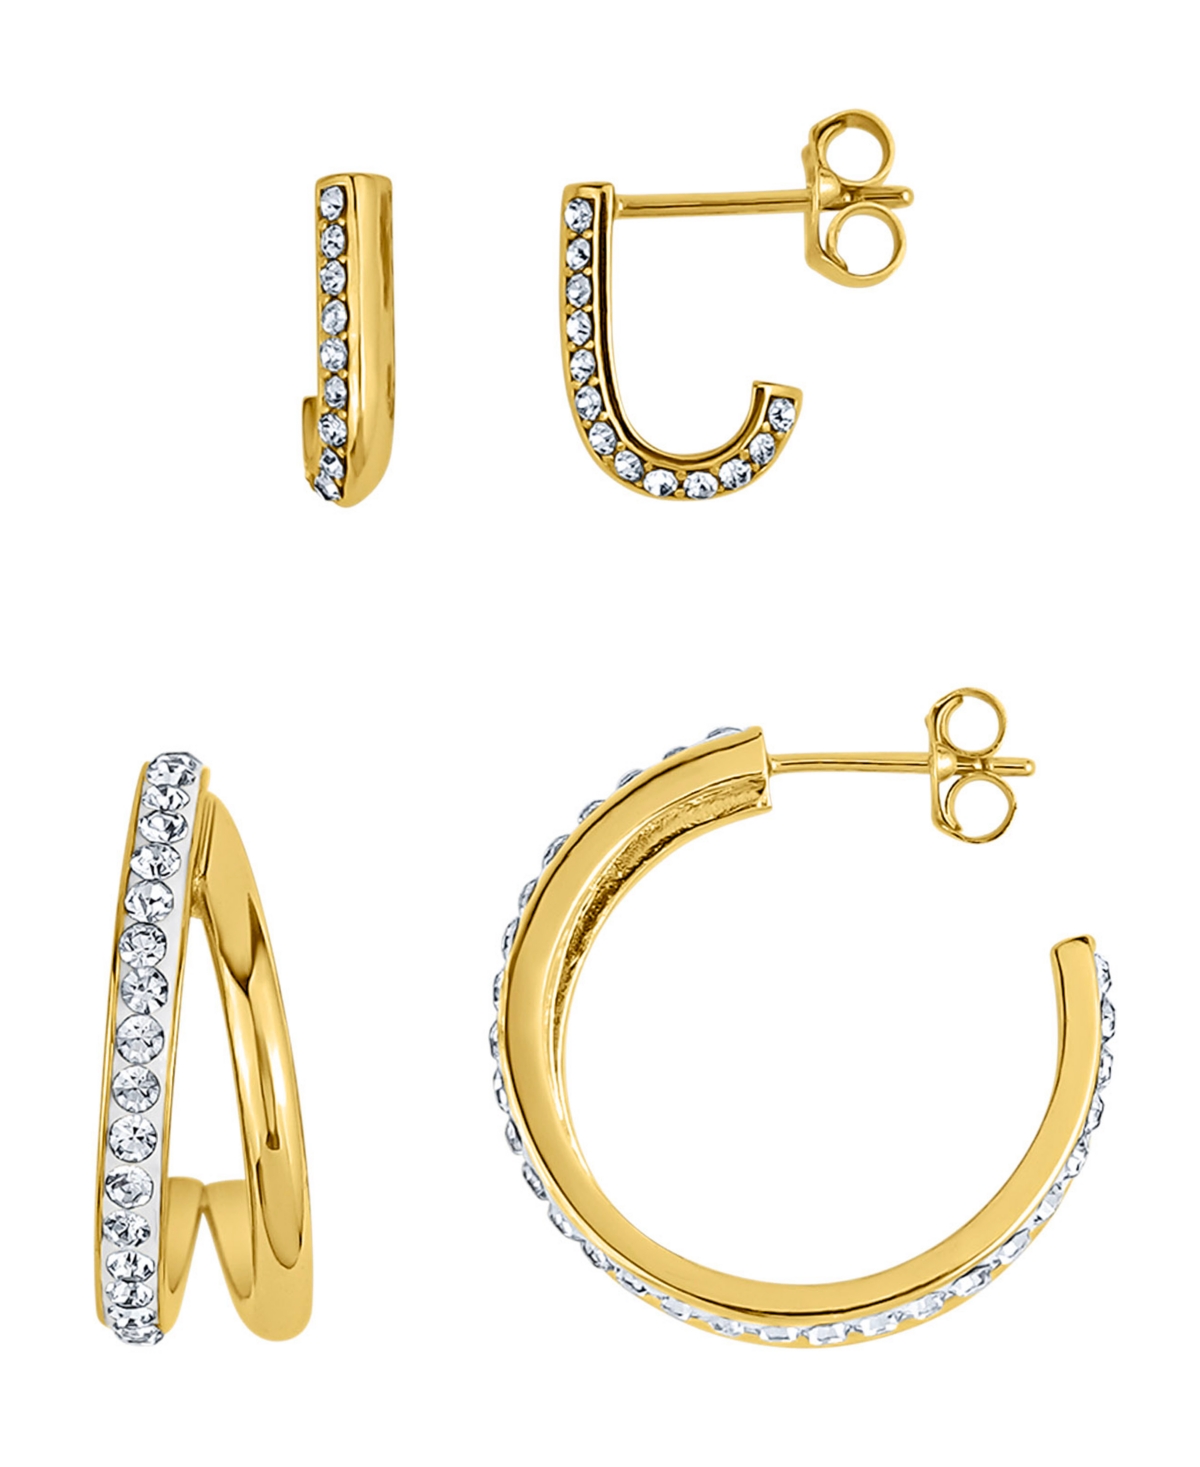 Duo Crystal Hoop Earrings, Set of 2 - Gold Plated